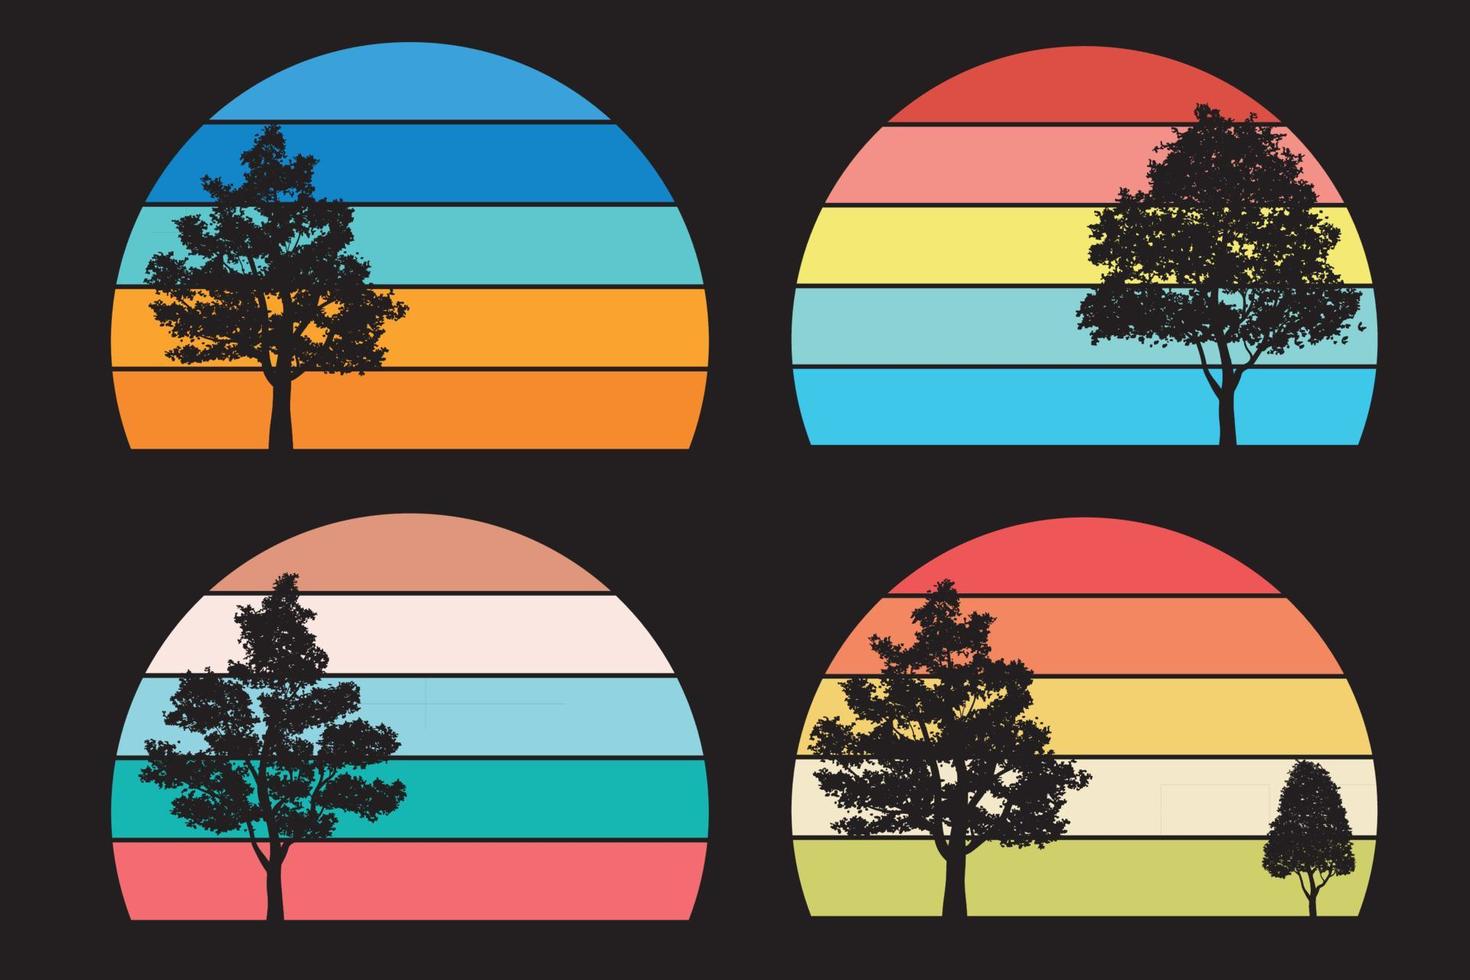 colección de puesta de sol retro para banner o impresión. Círculos rayados retrowave estilo años 80 con montañas y árboles forestales, vector gratis